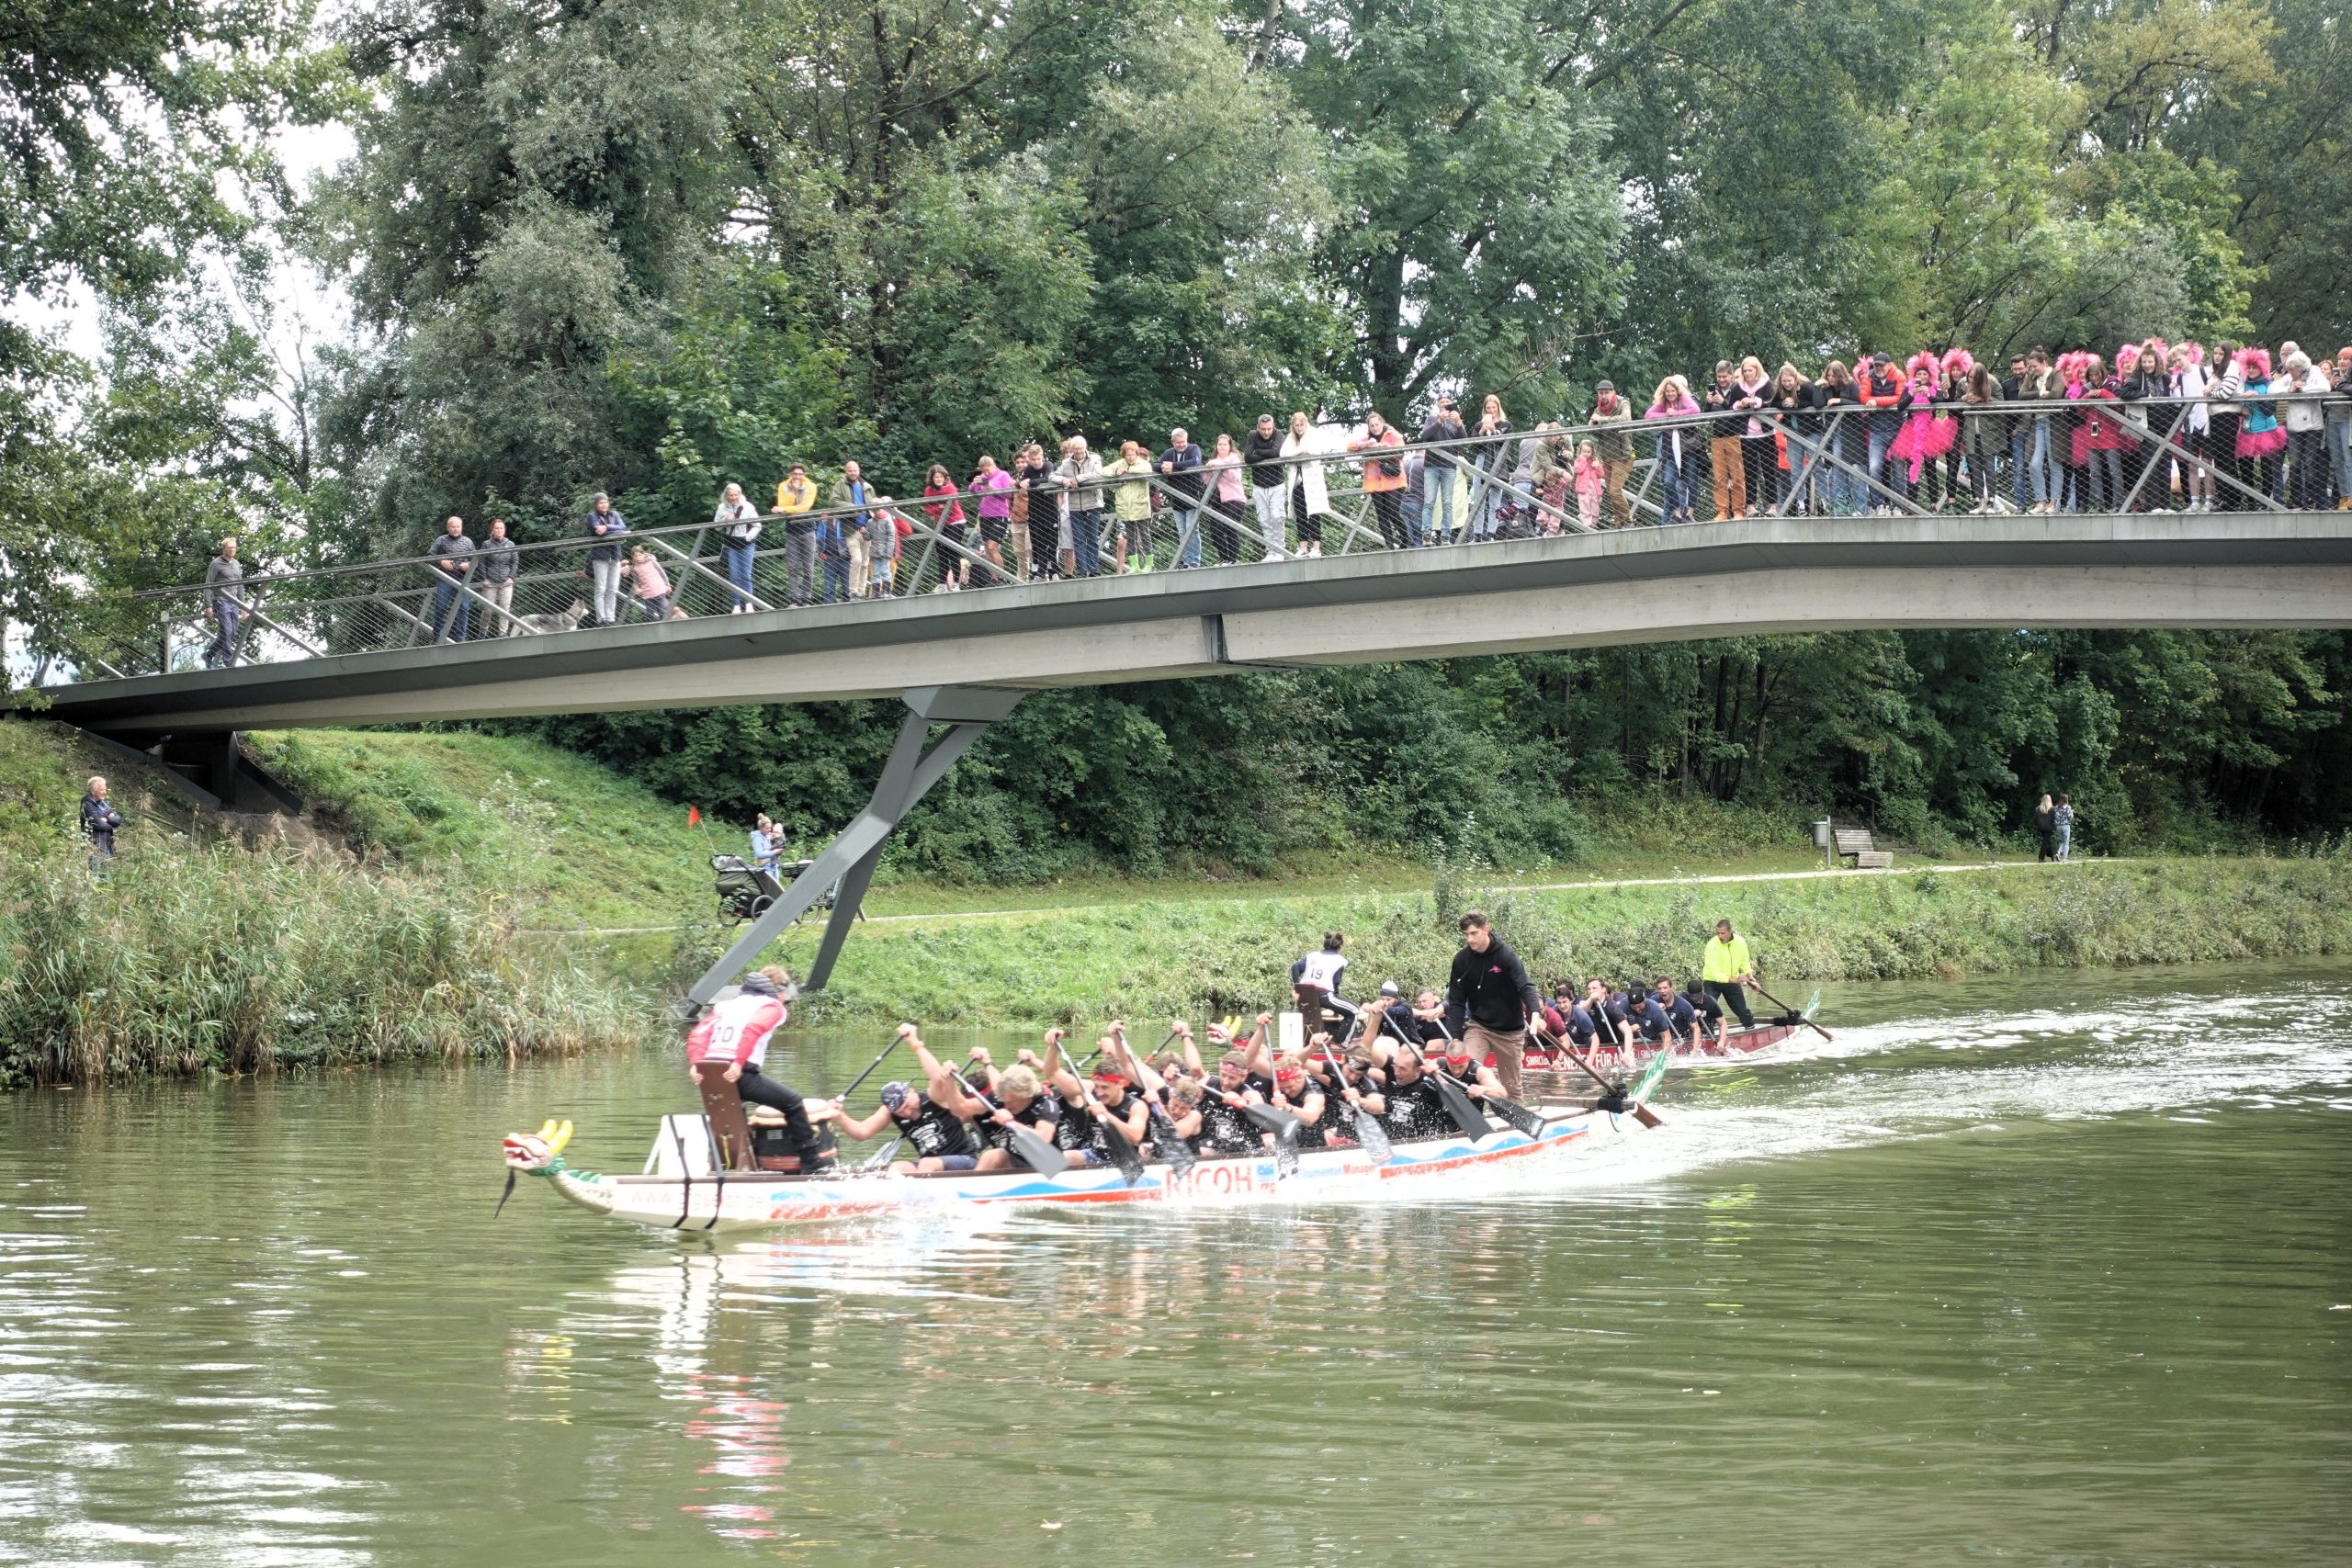 Drachenbootrennen an der Mangfall in Rosenheim. Fotos: Innpuls.me